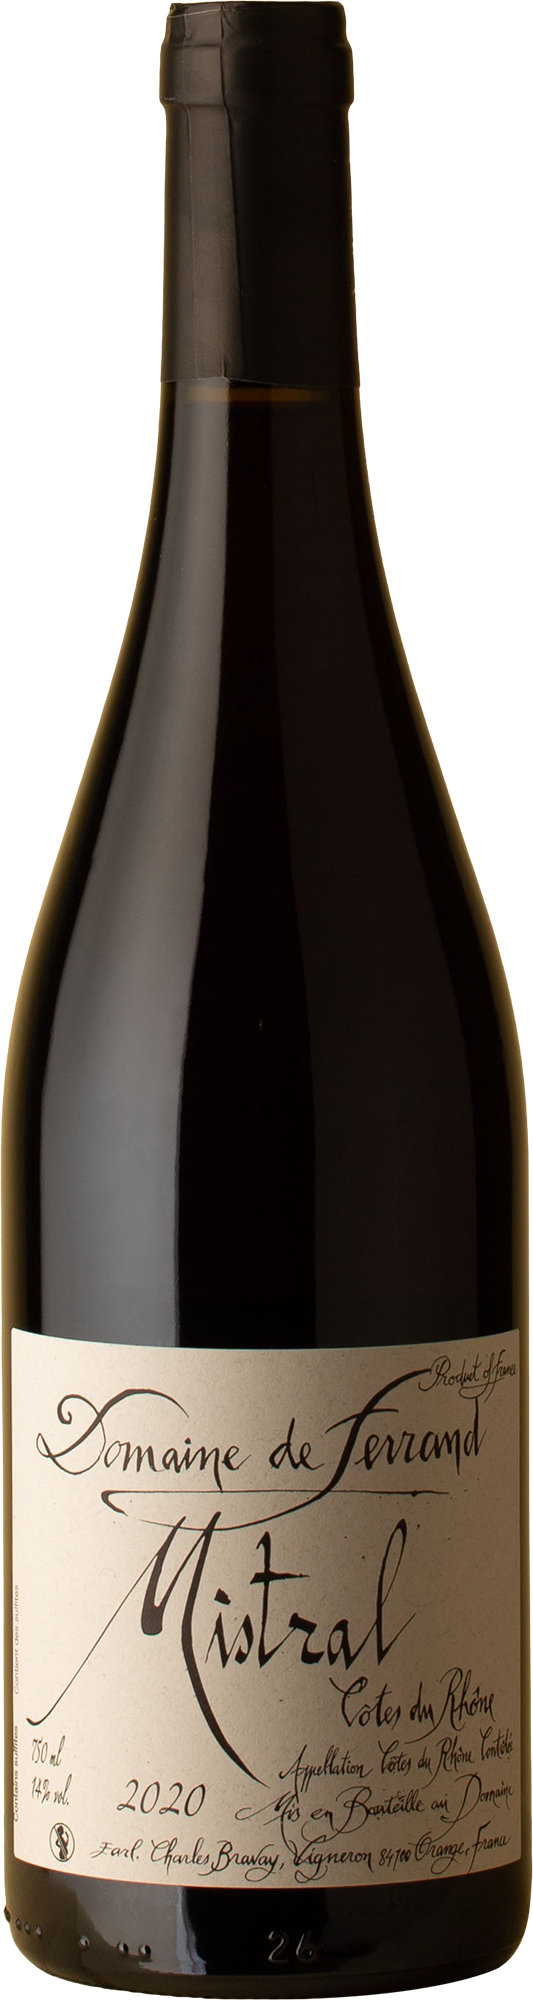 Domaine de Ferrand - Côtes du Rhône Mistral Grenache Blend 2020 Red Wine